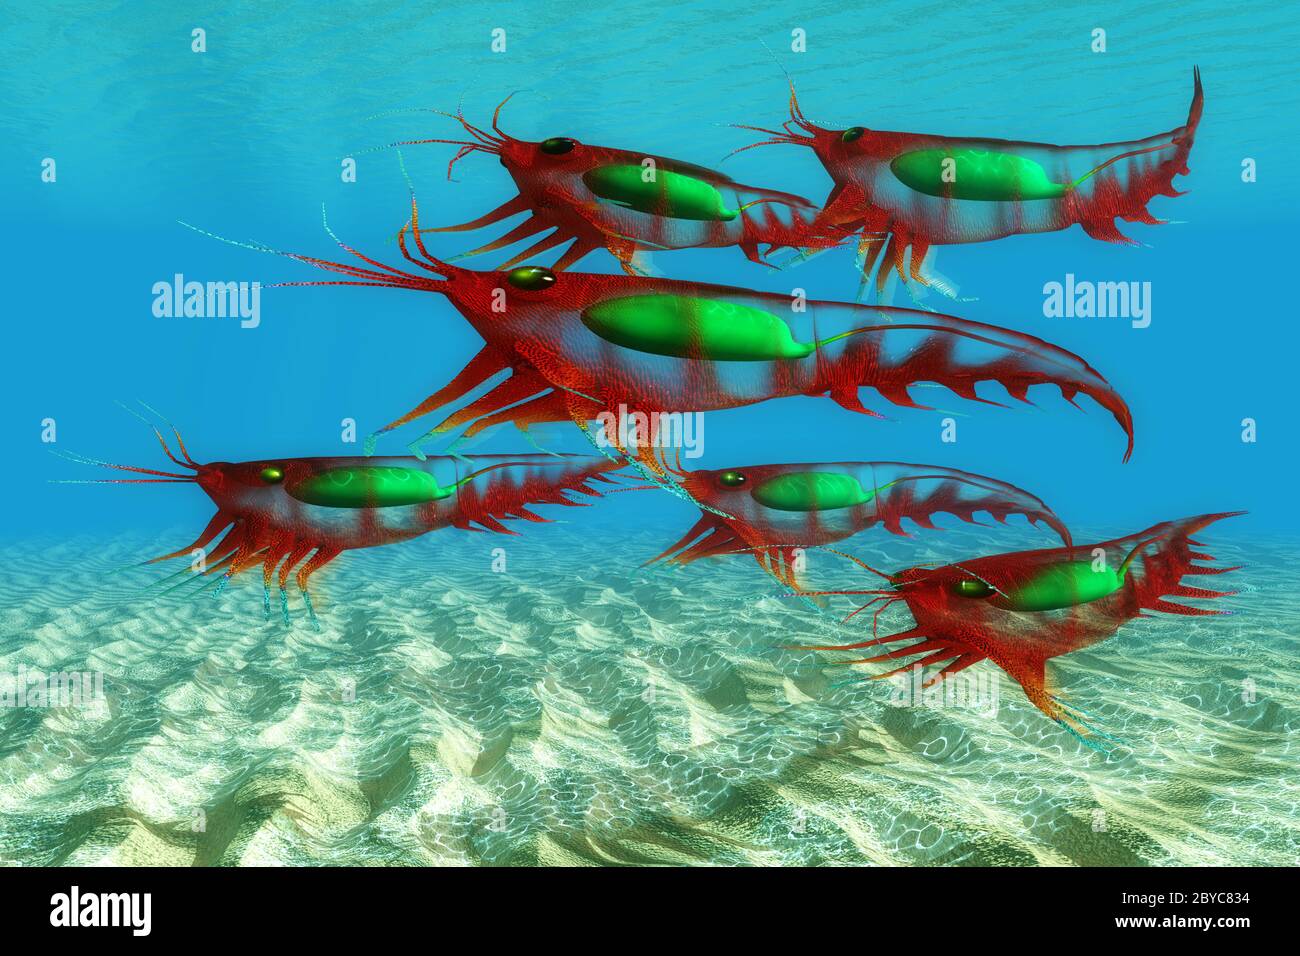 Meereskrebse Krill-Fische bieten Nahrung für zahlreiche Raubtiere und führen täglich vertikale Wanderungen in der Wassersäule durch. Stockfoto